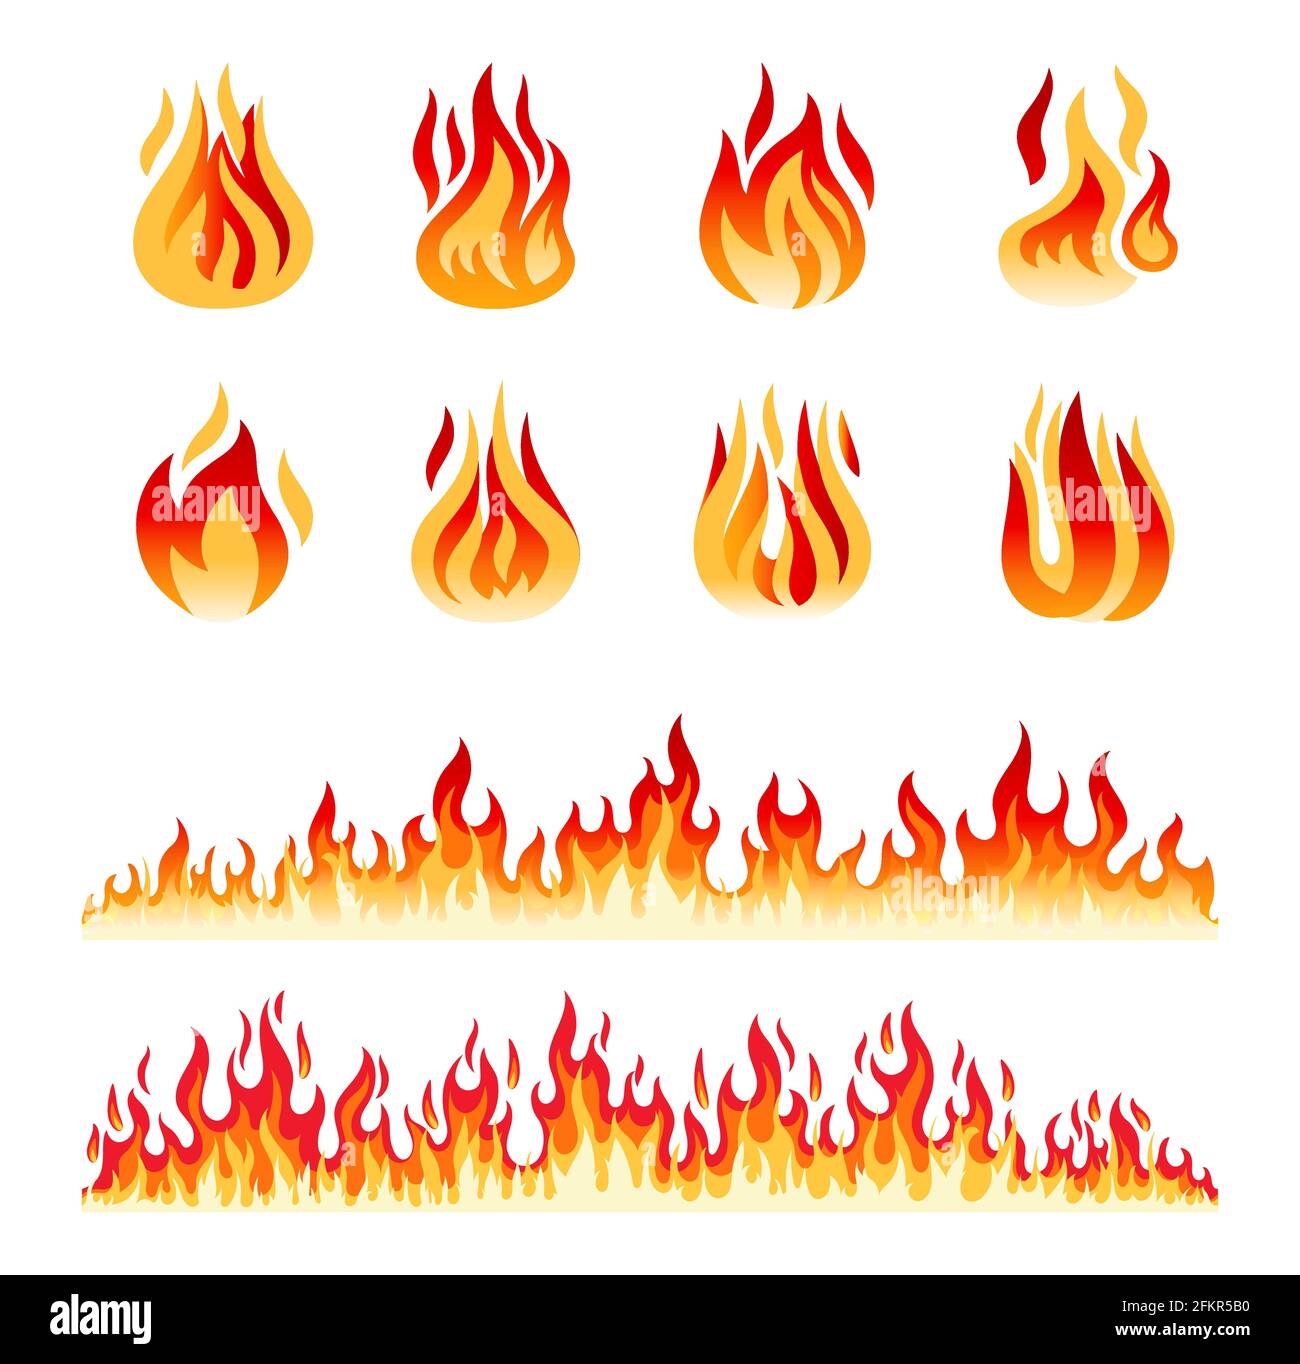 Flammes Isolees Sur Fond Blanc Frontieres De Feu Icones Vectorielles De Flamme Et De Lumiere De Dessin Anime Image Vectorielle Stock Alamy